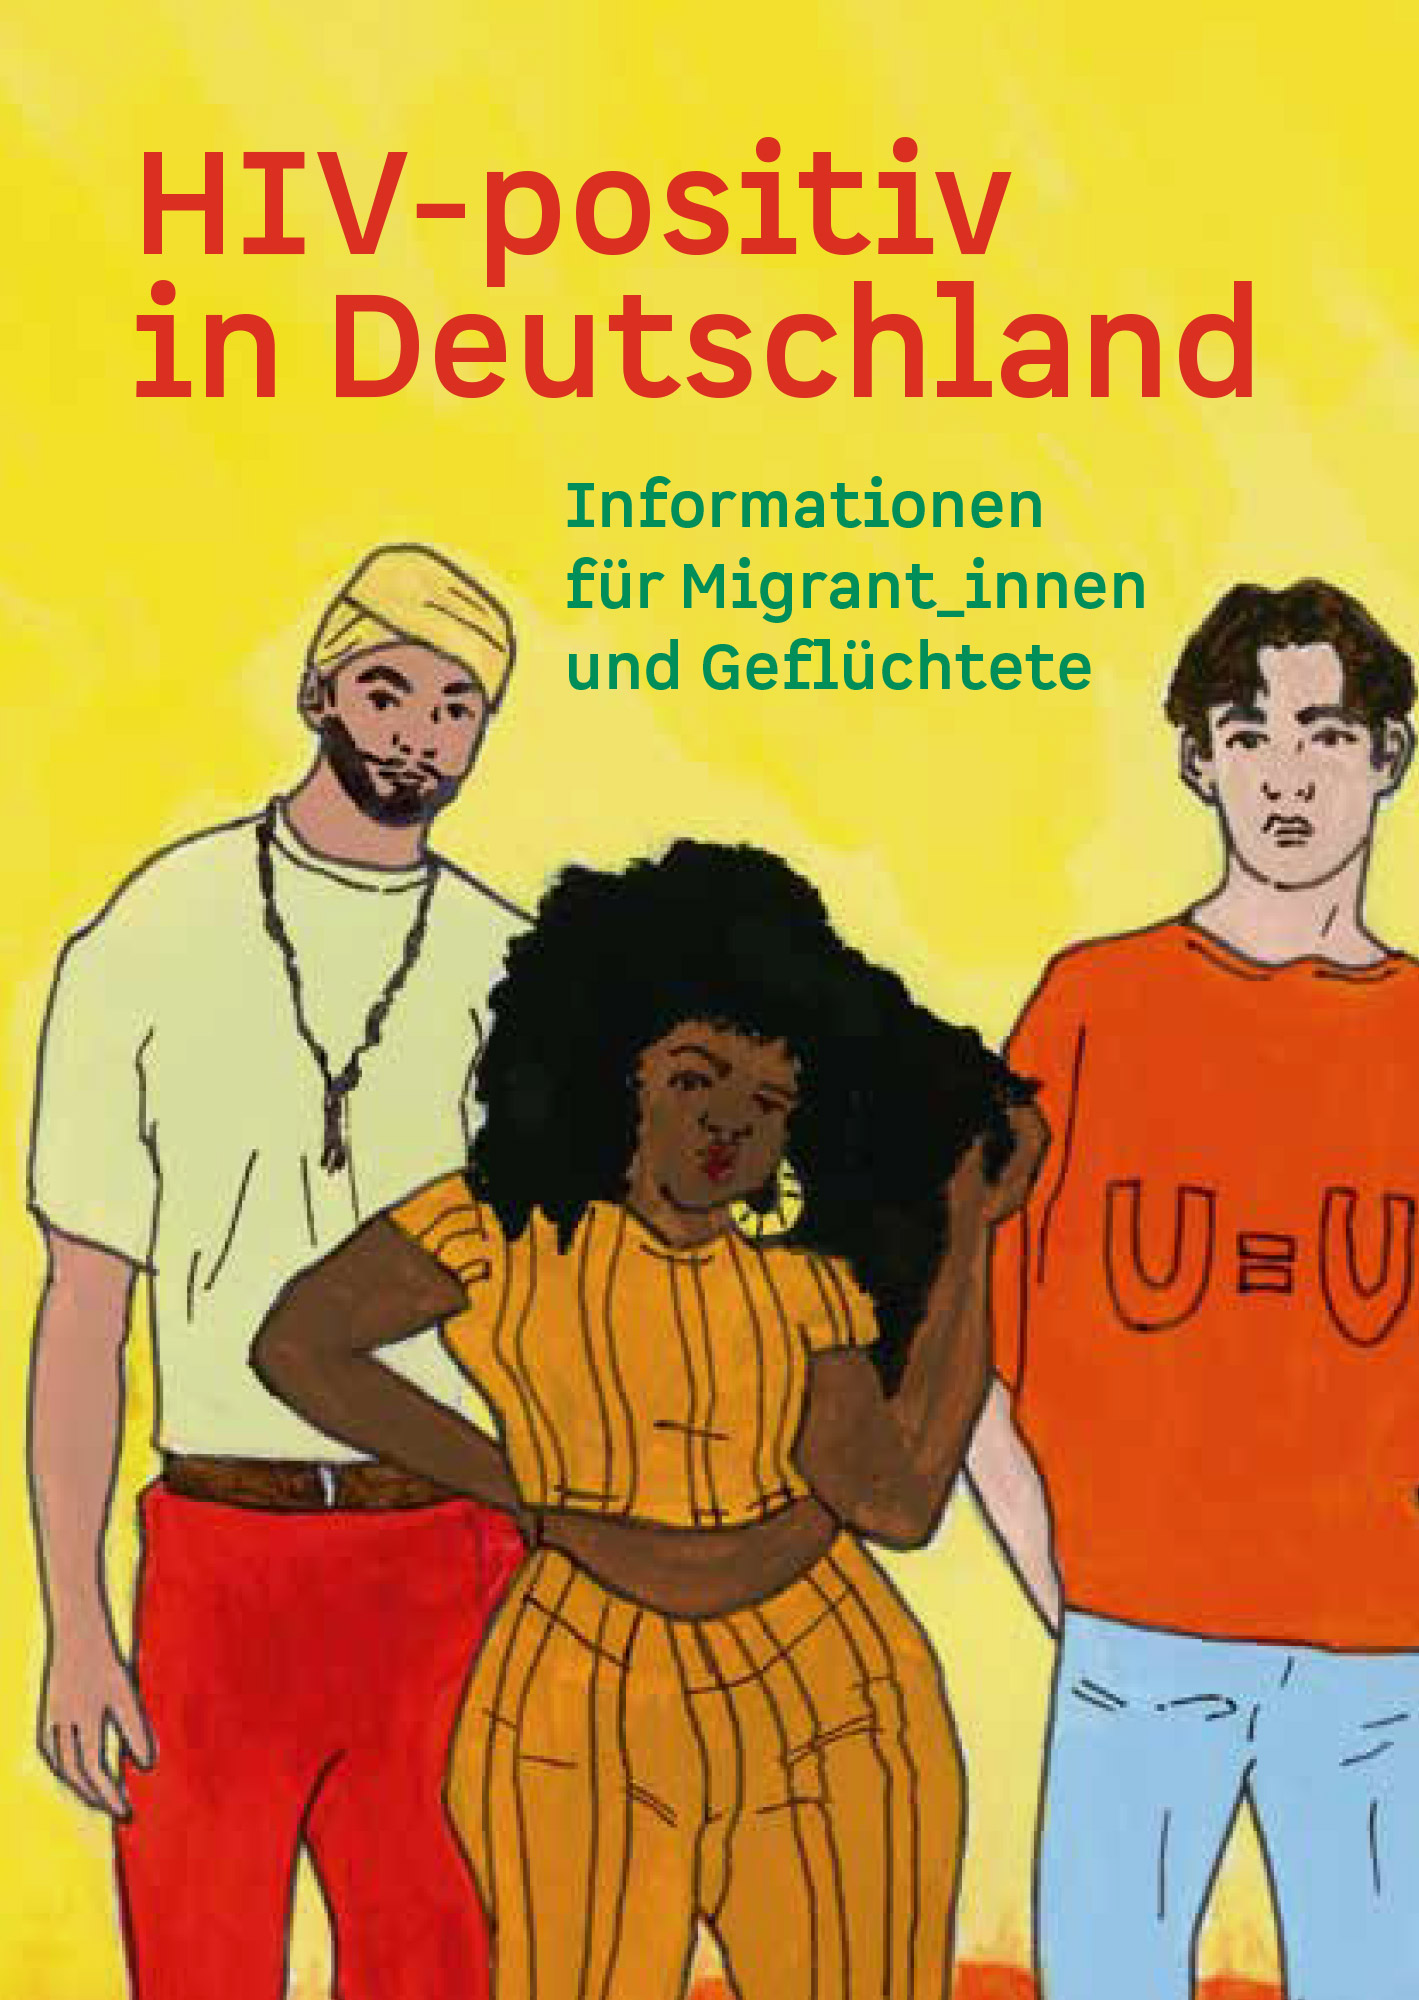 Titelseite der Broschüre "HIV-positiv in Deutschland - Informationen für Migrant_innen und Geflüchtete"